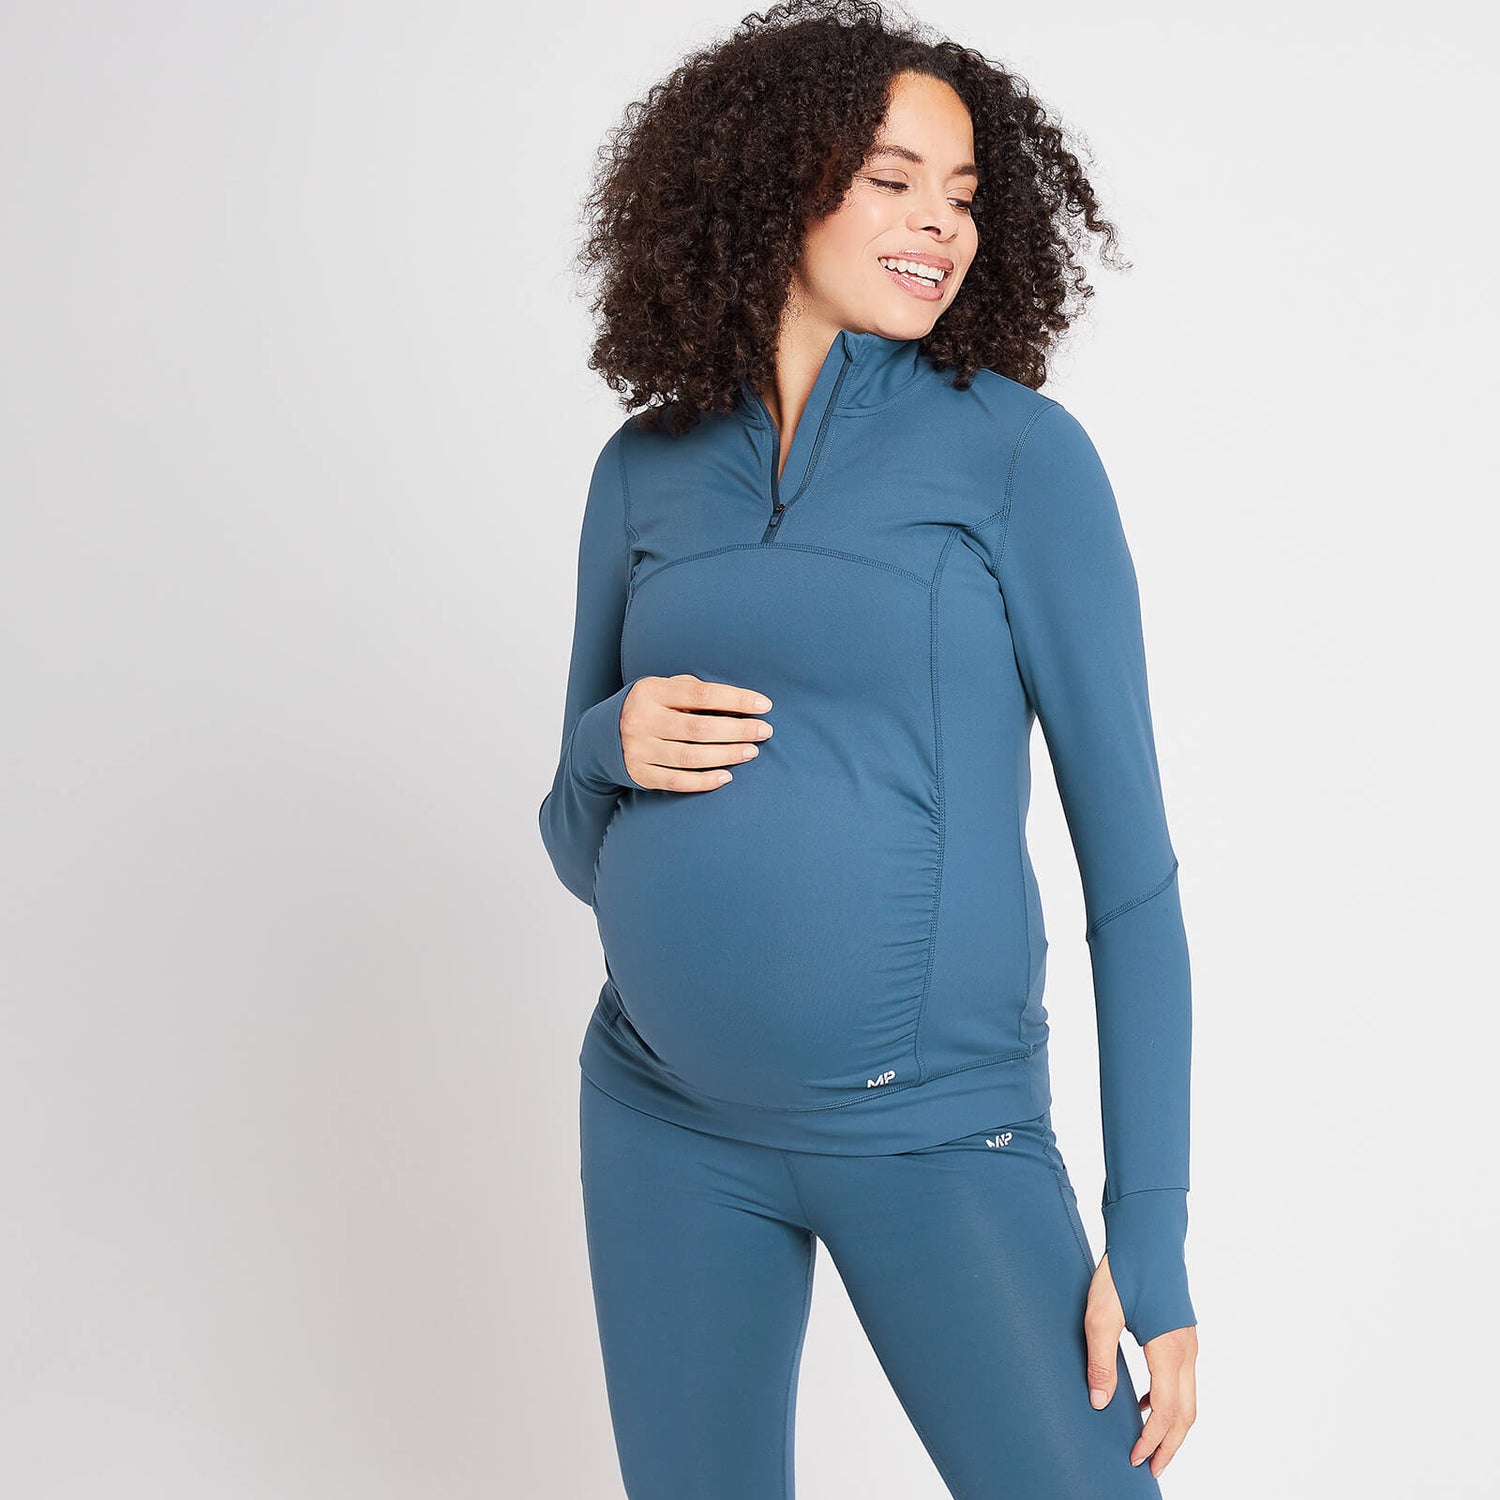 Γυναικείο Τοπ Εγκυμοσύνης MP Power Με Φερμουάρ 1/4 - Dust Blue - XS